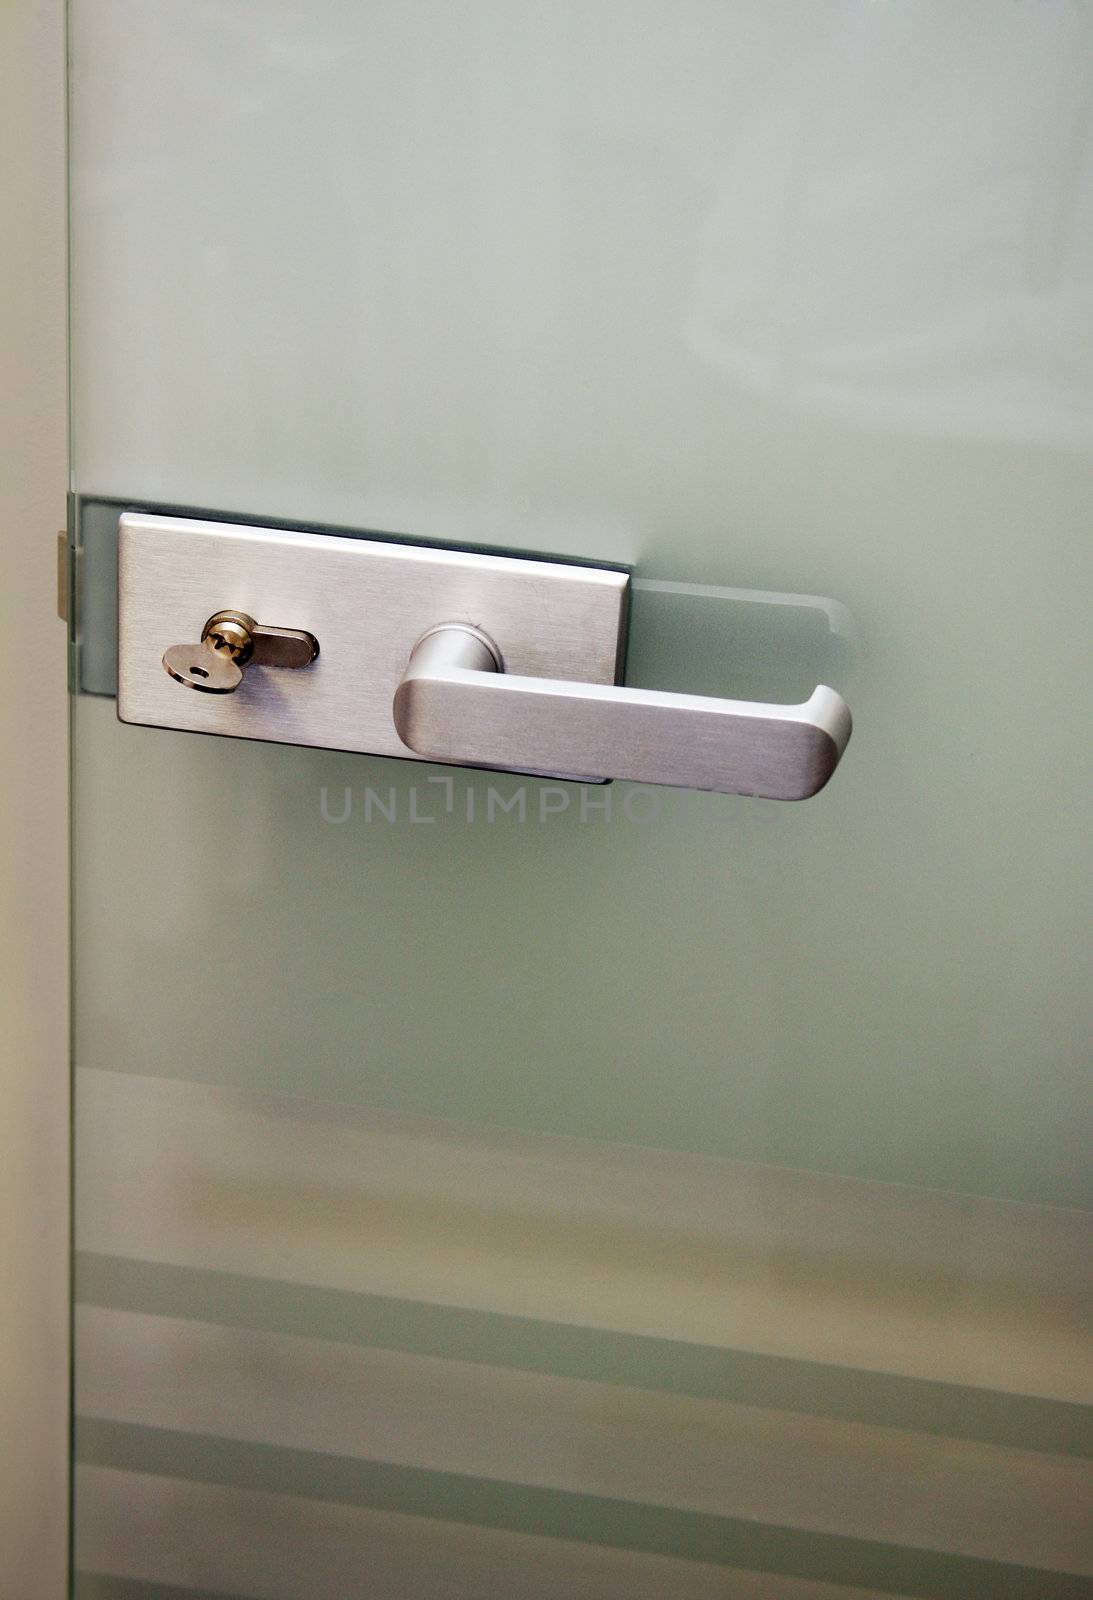 Metal door handle and the lock on a glass door